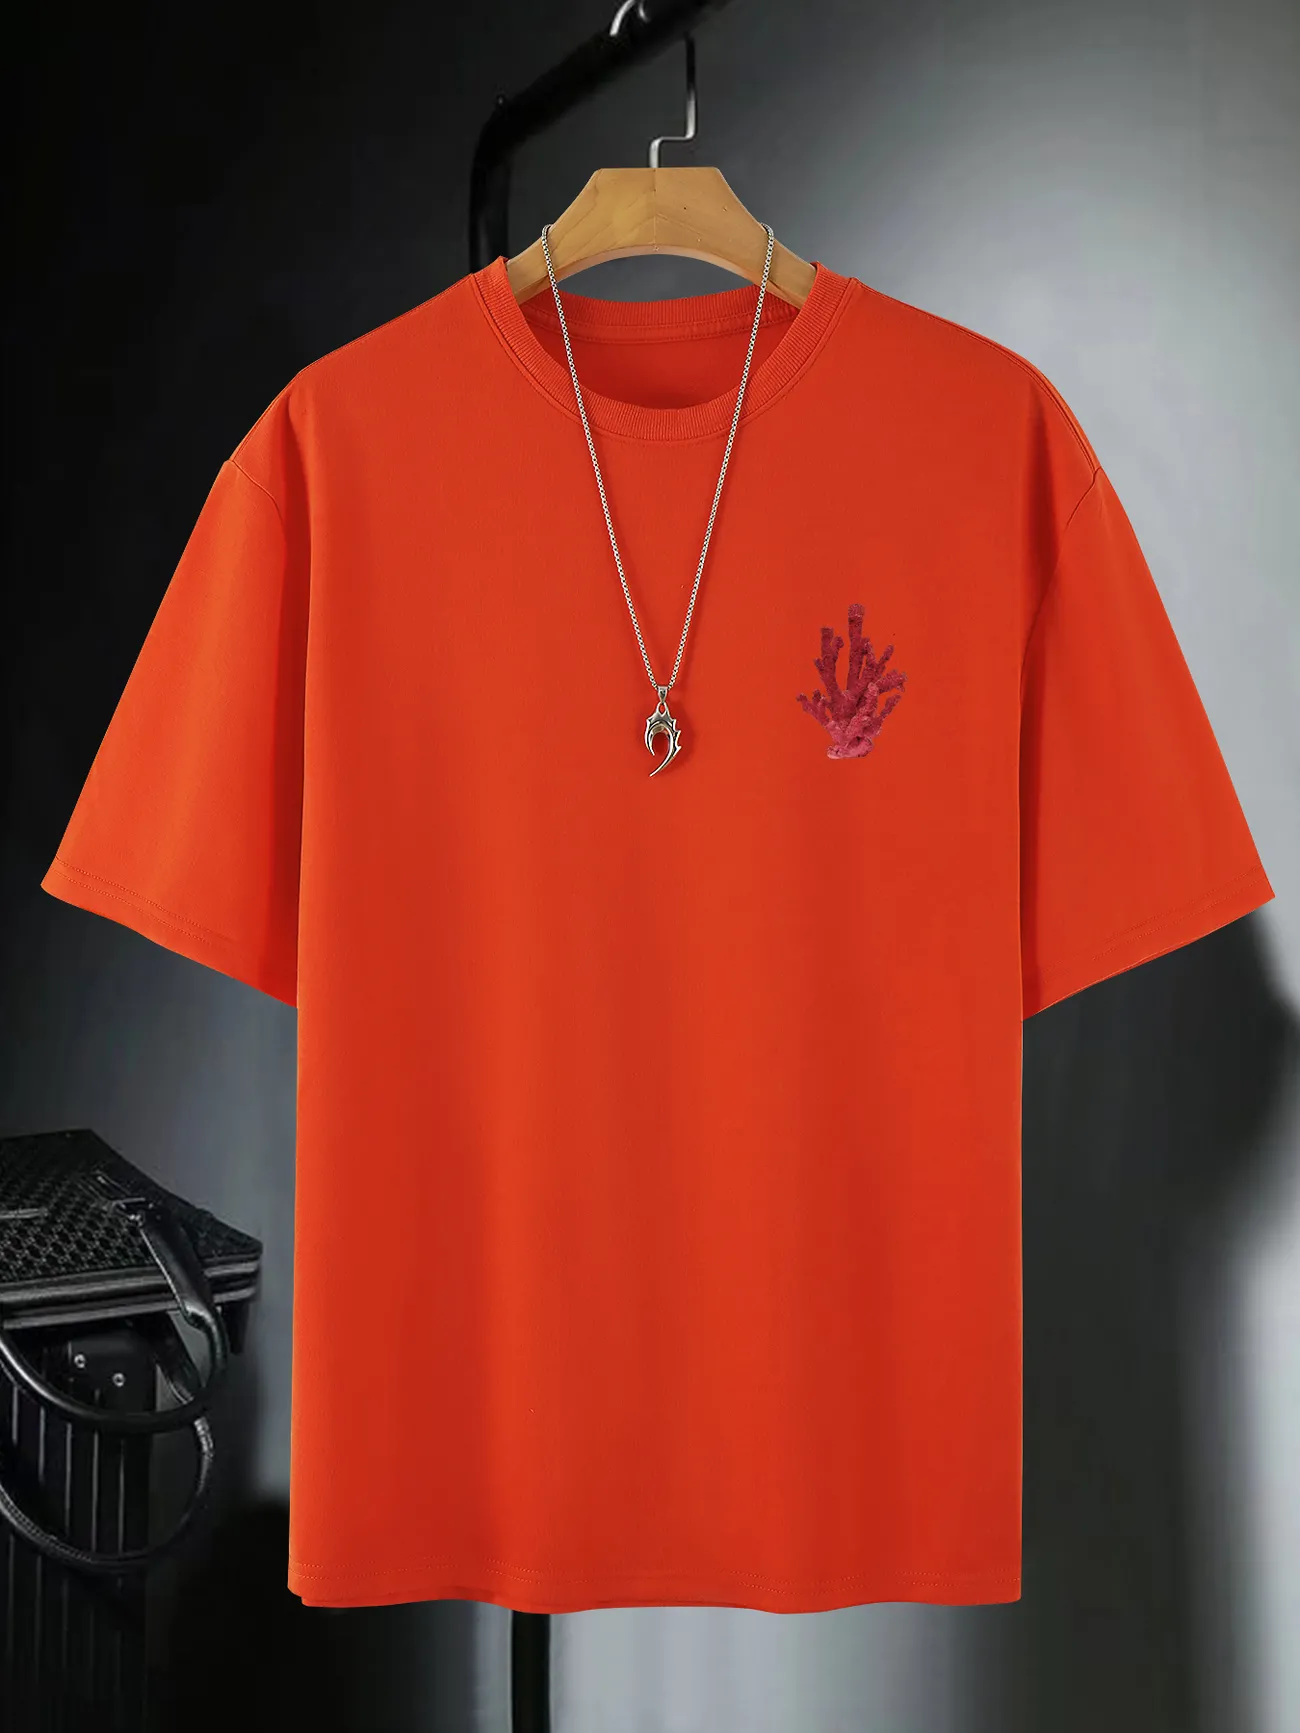 lv orange t shirt